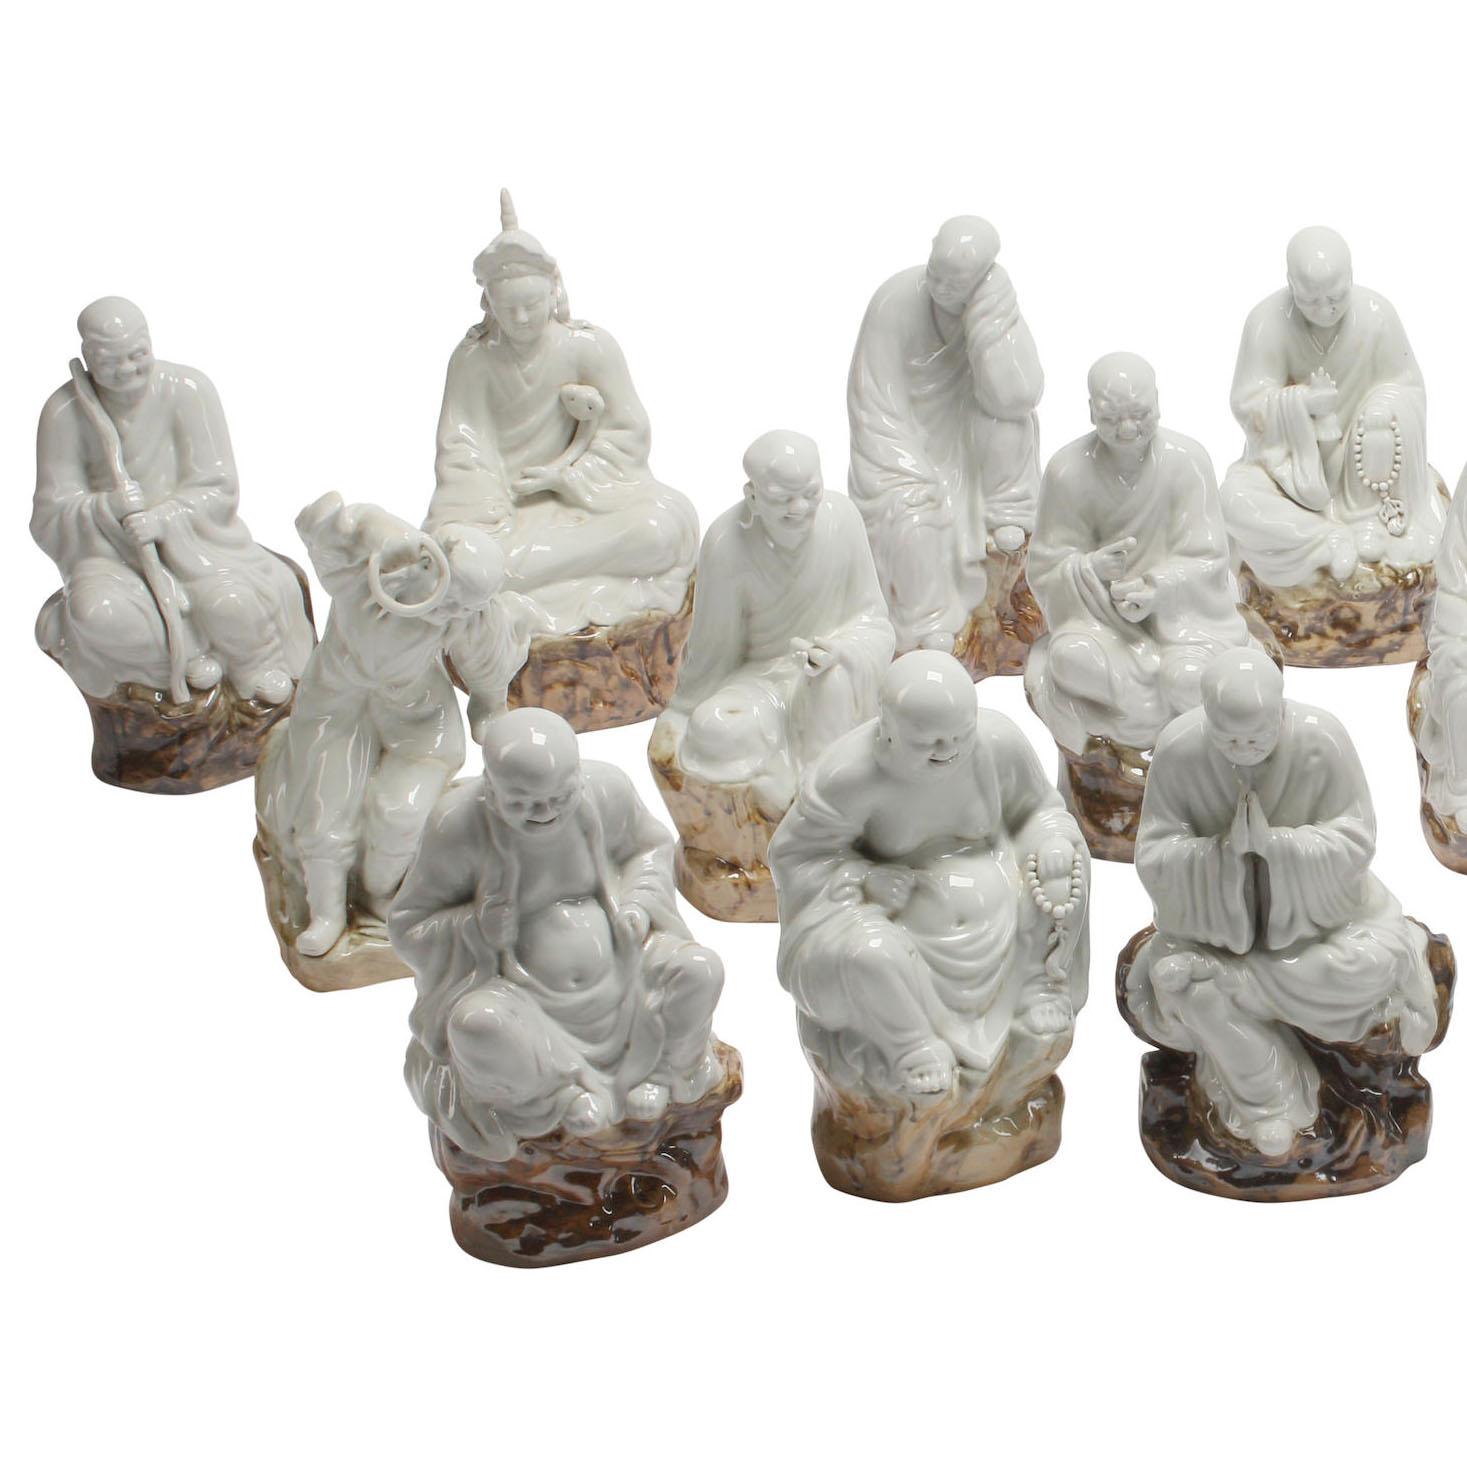 Eine seltene Reihe von achtzehn Blanc de Chine Stil emailliert - glasierte Keramik Arhat, auch bekannt als Luohans, die Jünger des Buddha, die jeweils die Marke und Stil des chinesischen Herstellers Zeng Longsheng. Die Achtzehn Arhats (oder Luohan)